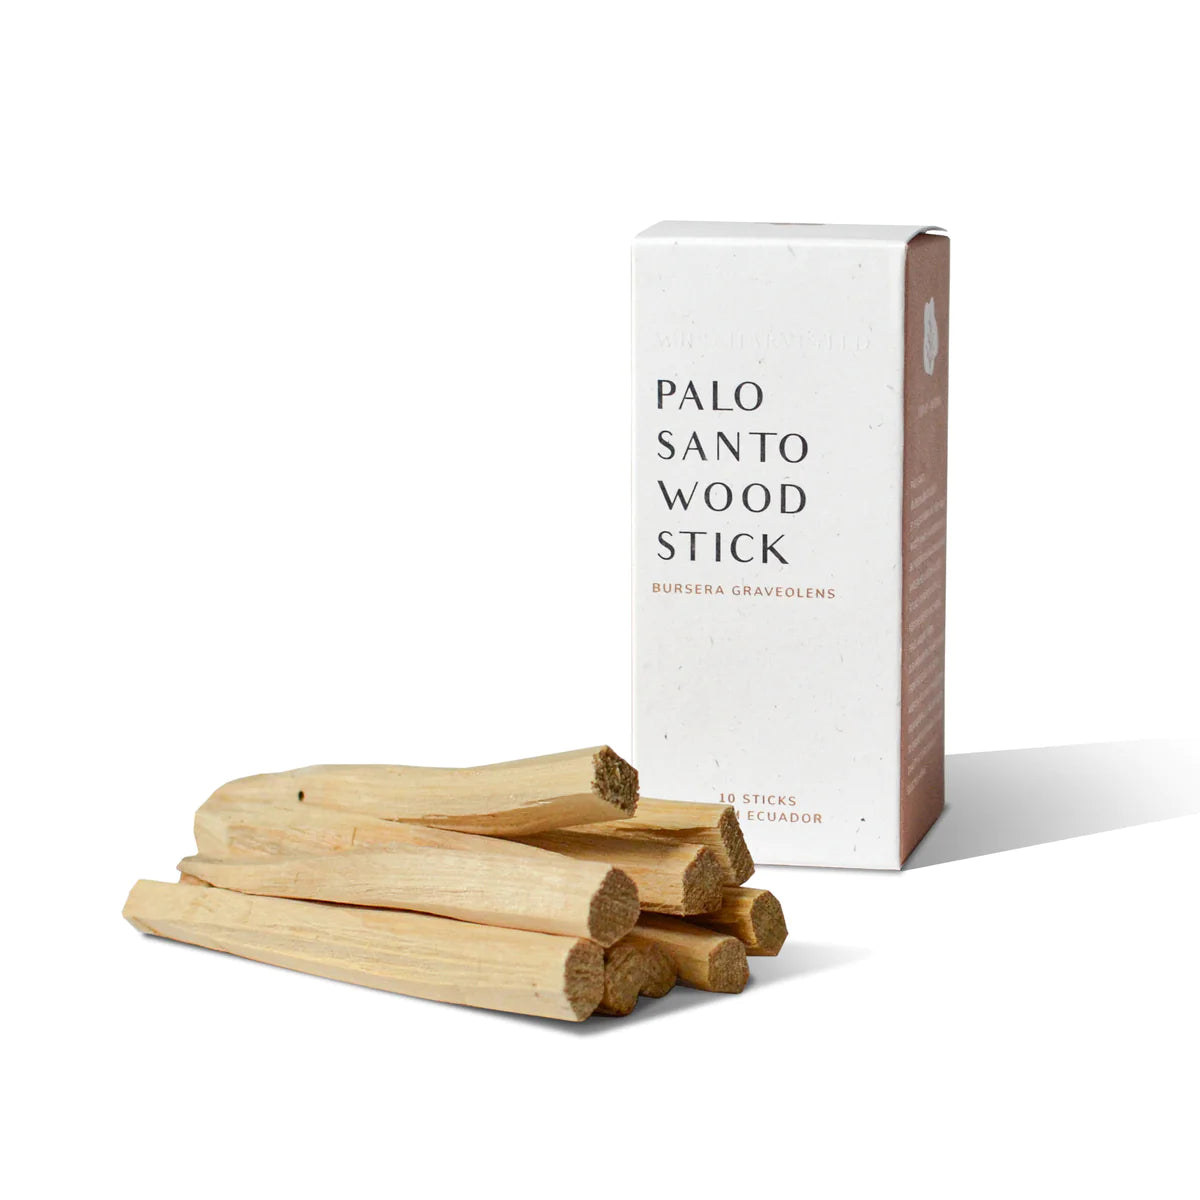 Palo Santo Sticks from Ecuador